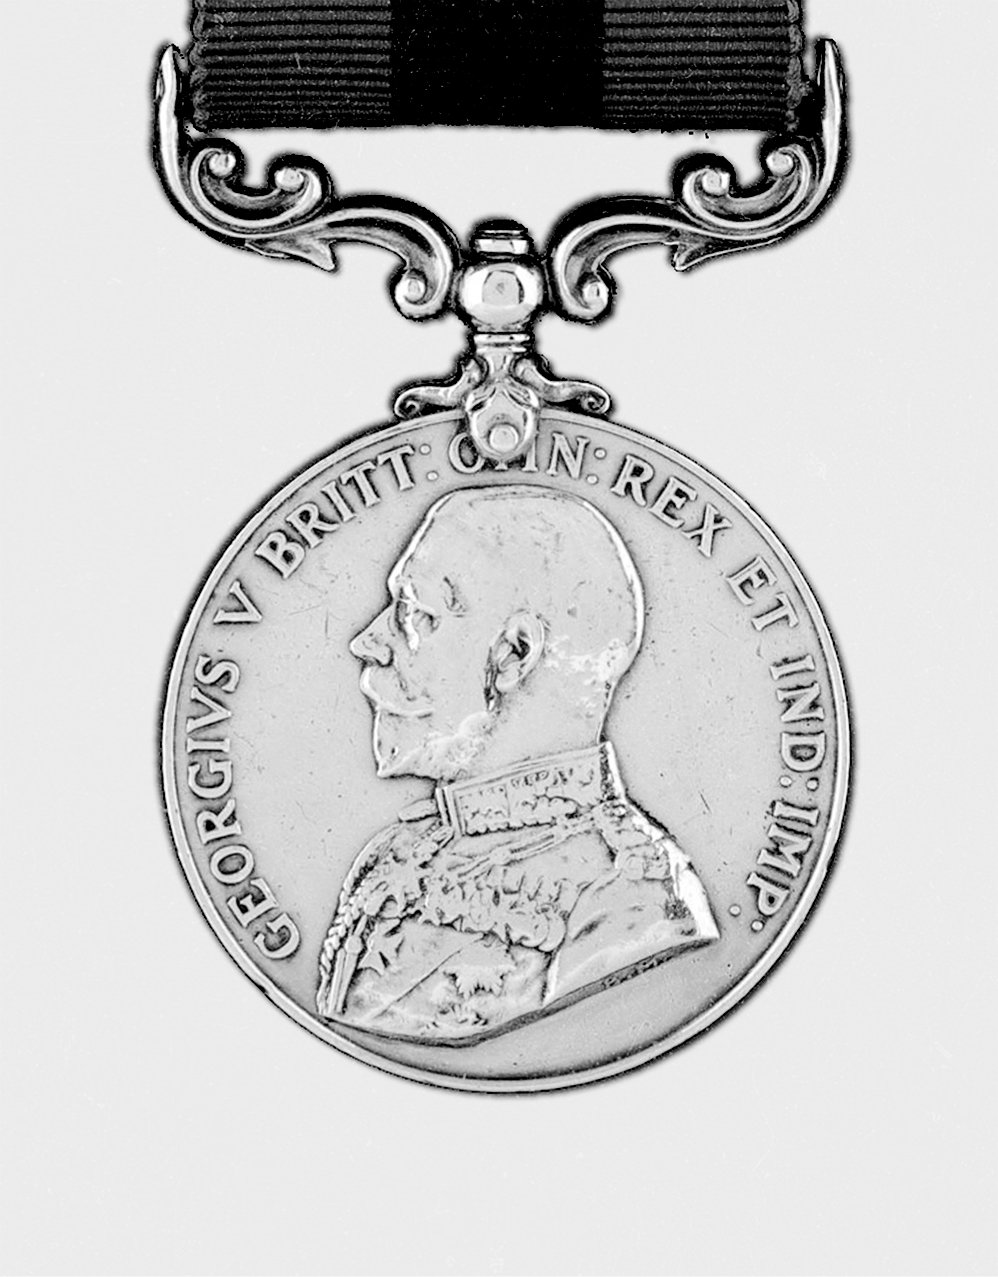 Malcolm McIver Medal